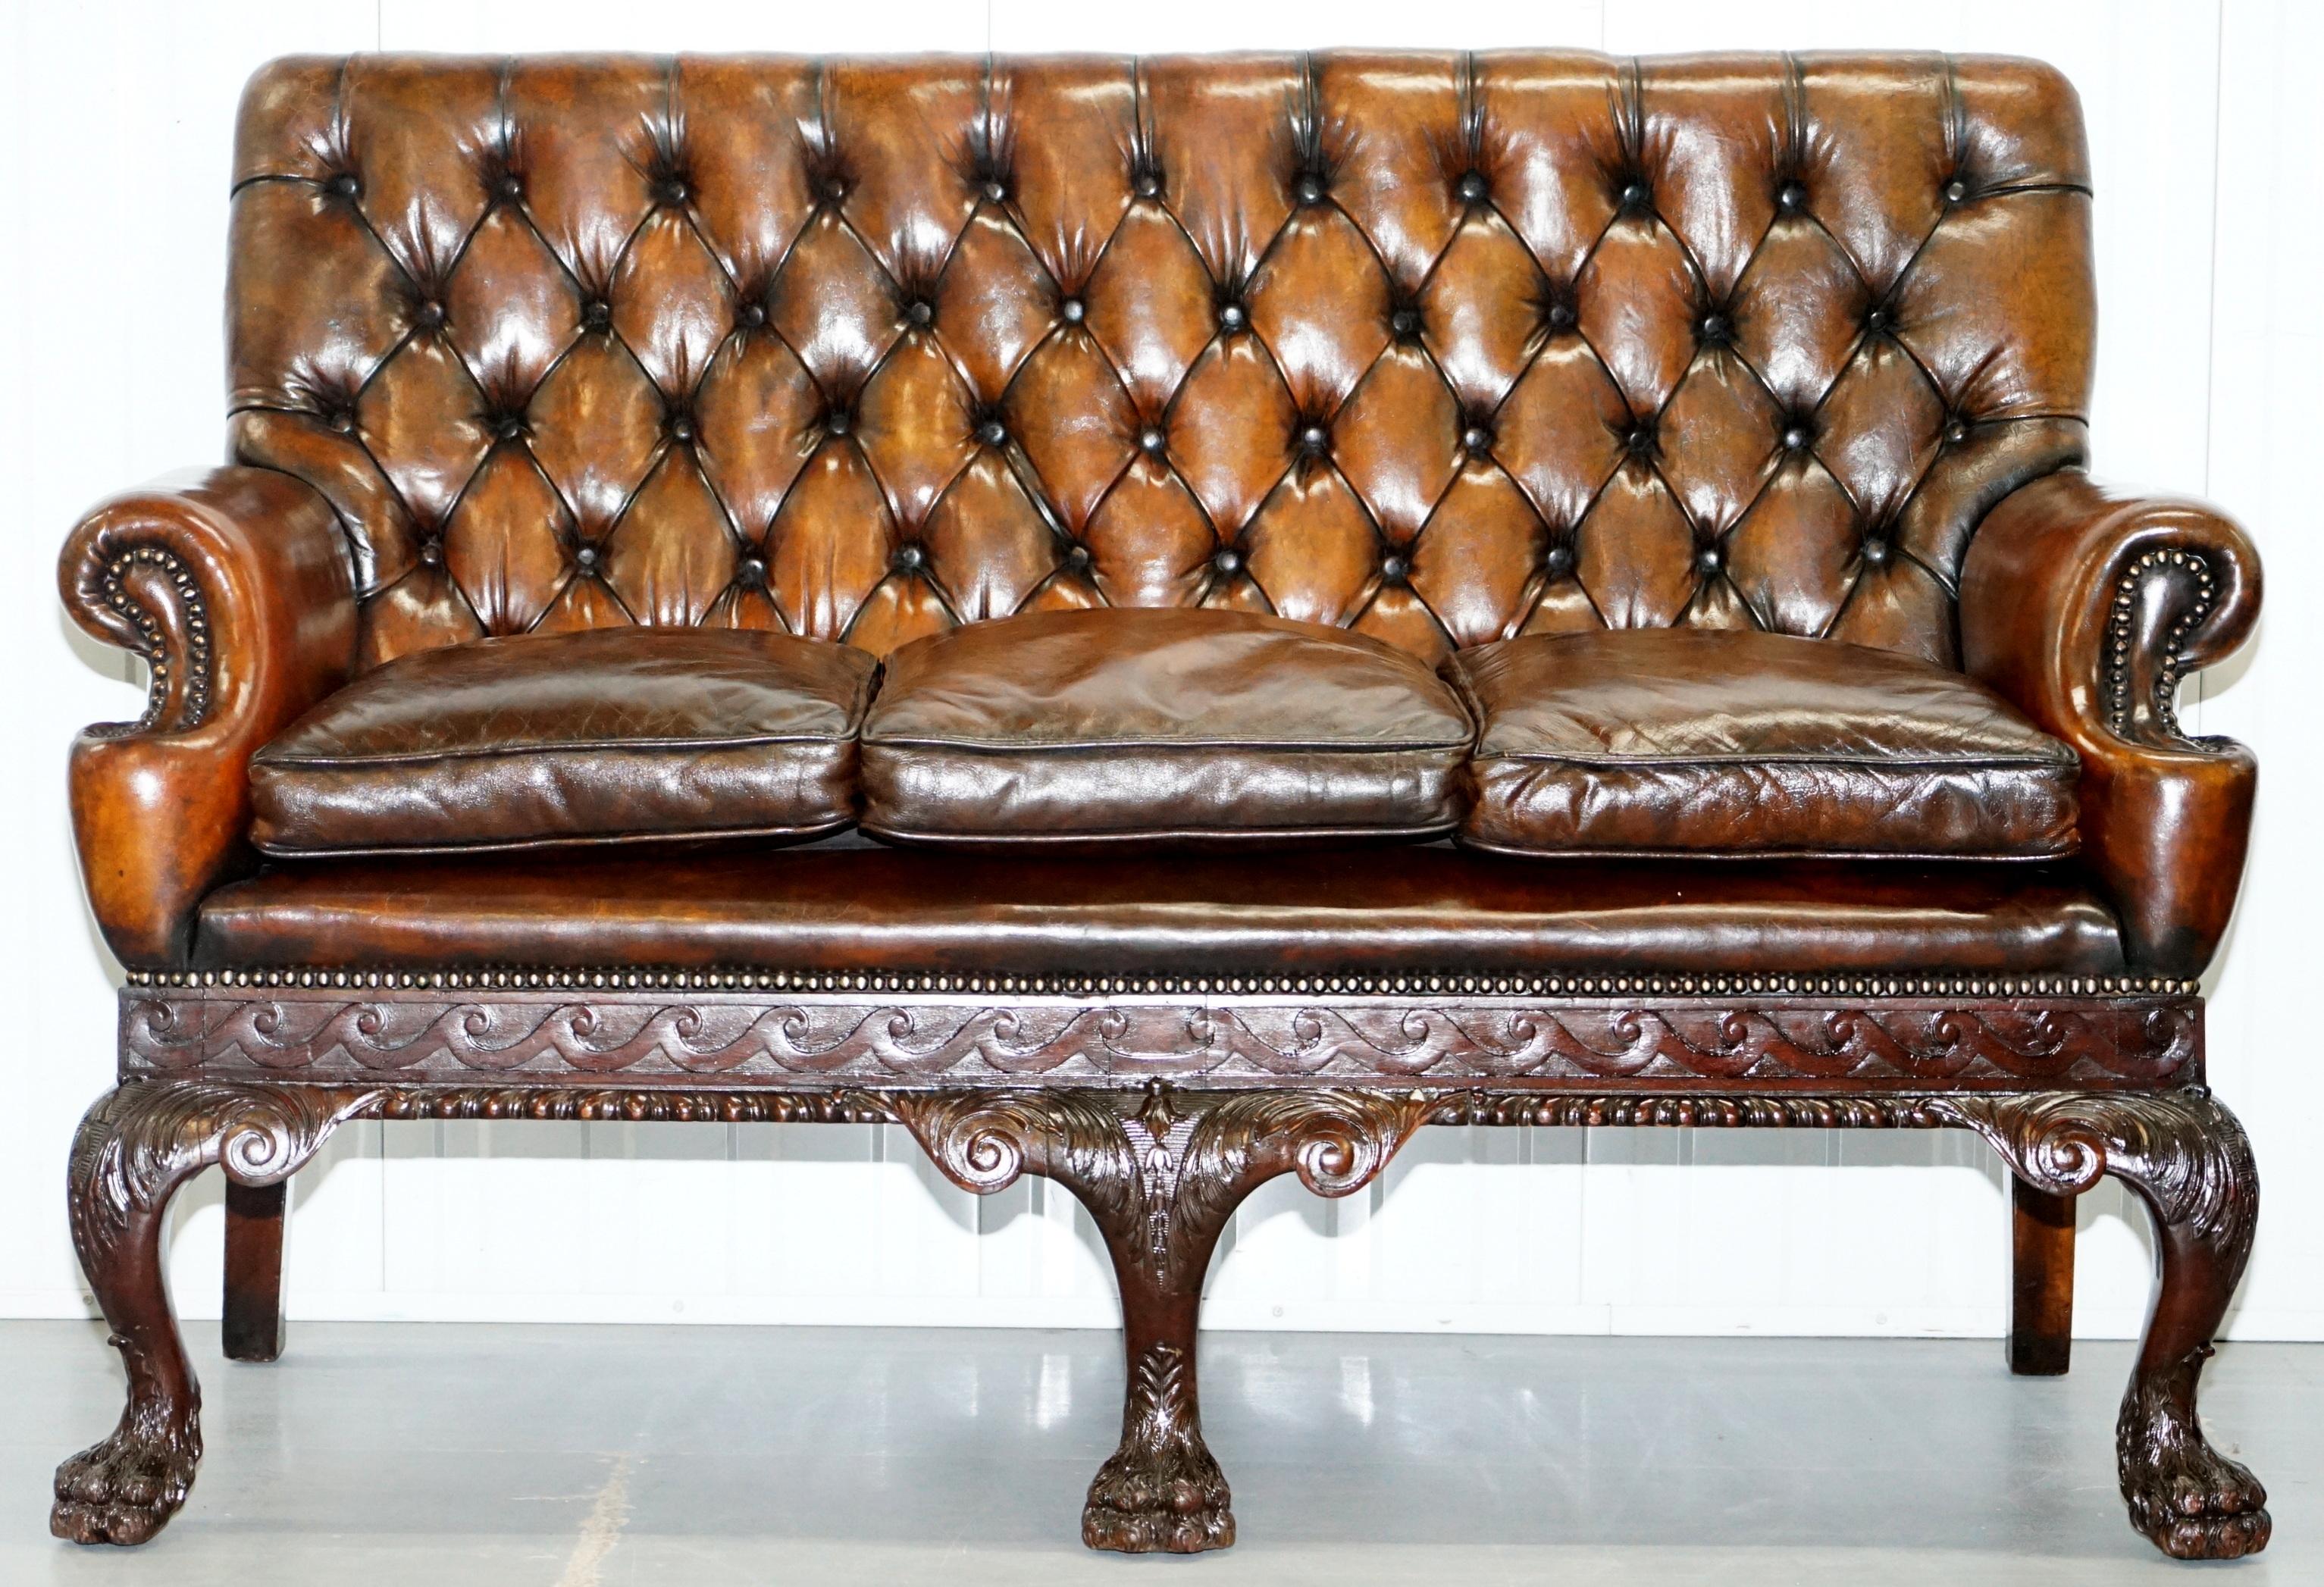 Nous sommes ravis de proposer à la vente ce canapé en cuir marron Chesterfield de style irlandais géorgien de la fin de l'époque victorienne, absolument superbe, avec des pieds en pattes de lion poilues sculptées à la main

Je n'en ai jamais vu